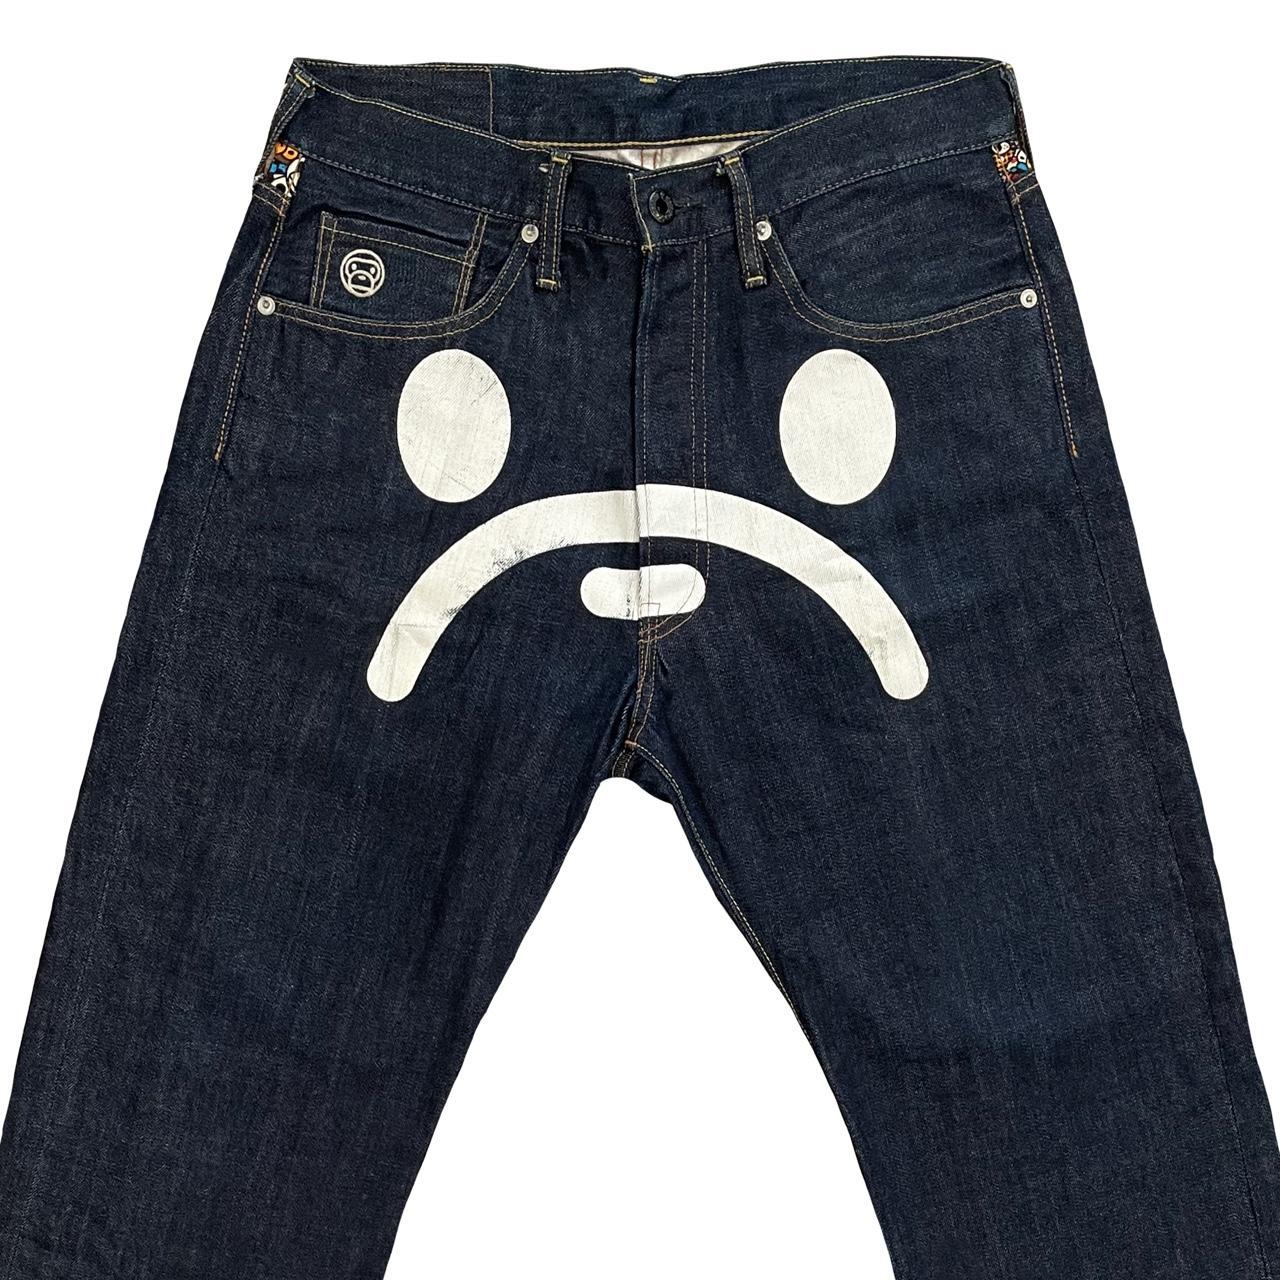 Bape Sad Face Jeans